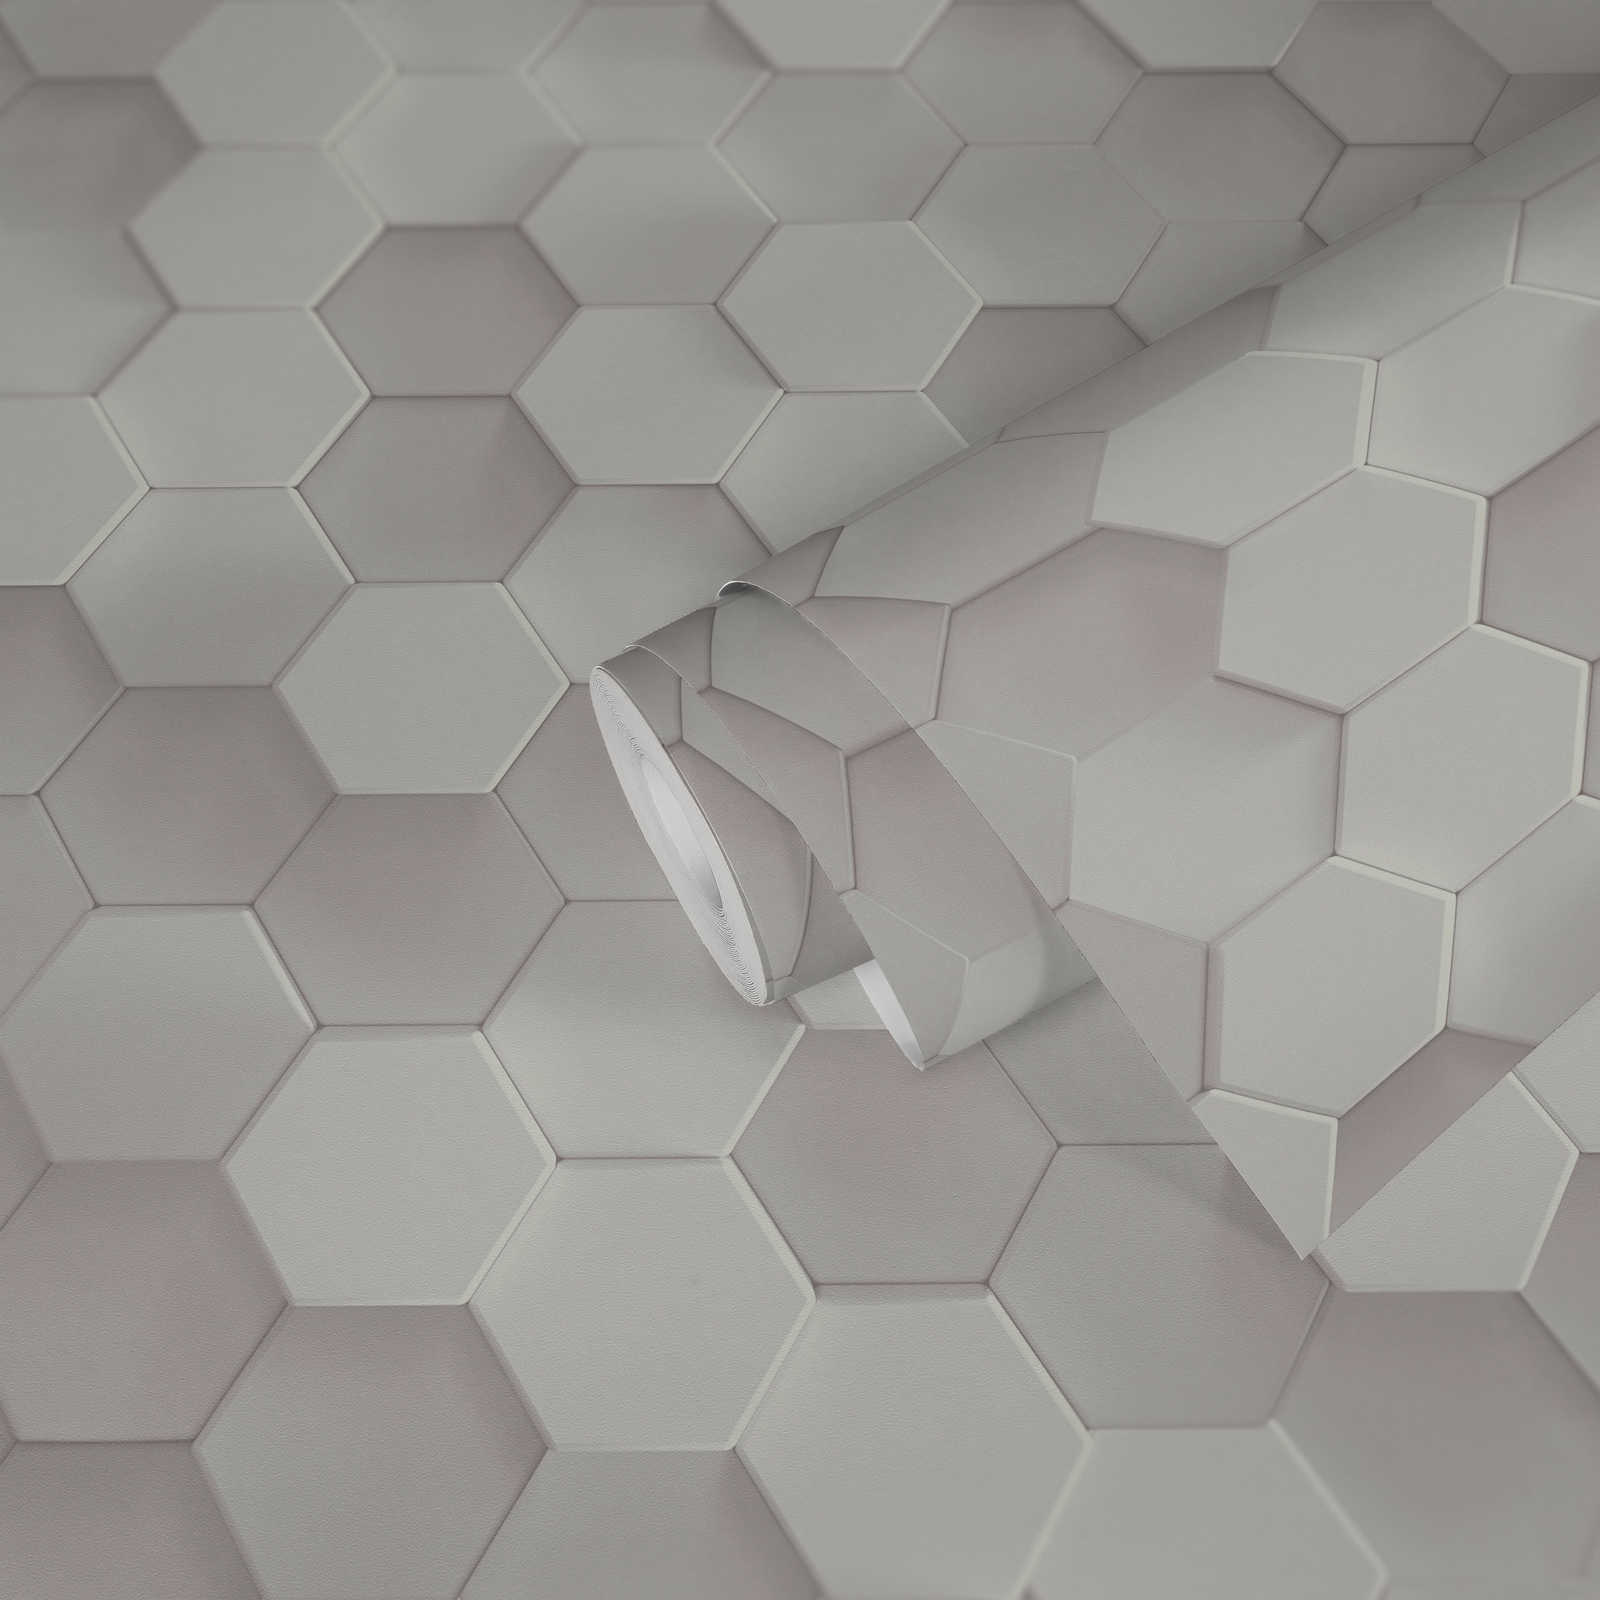             Papier peint Hexagon 3D motif graphique nid d'abeille - Blanc
        